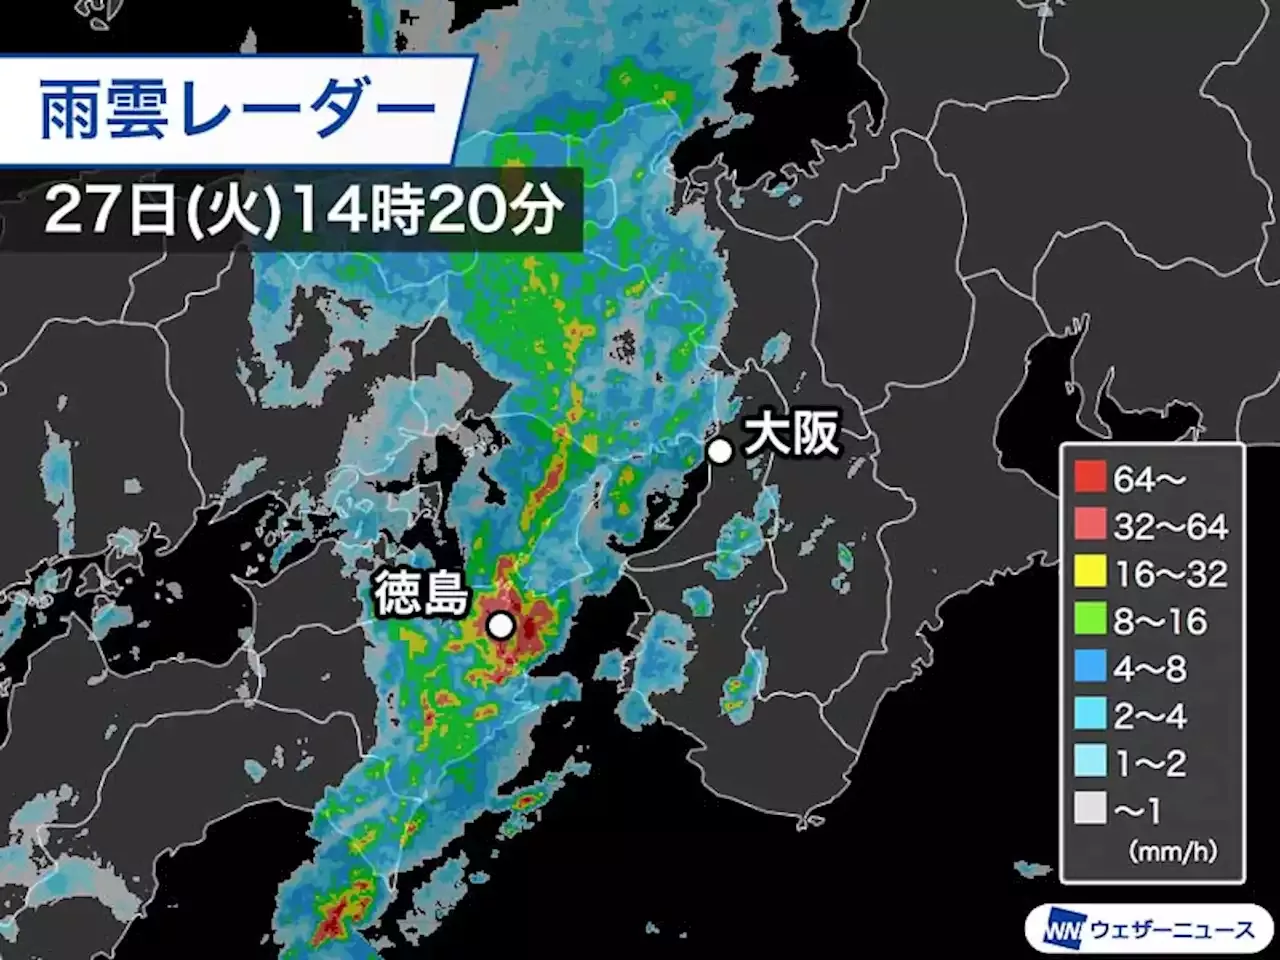 関西を活発な雨雲が通過 大阪でも土砂降りの雨に